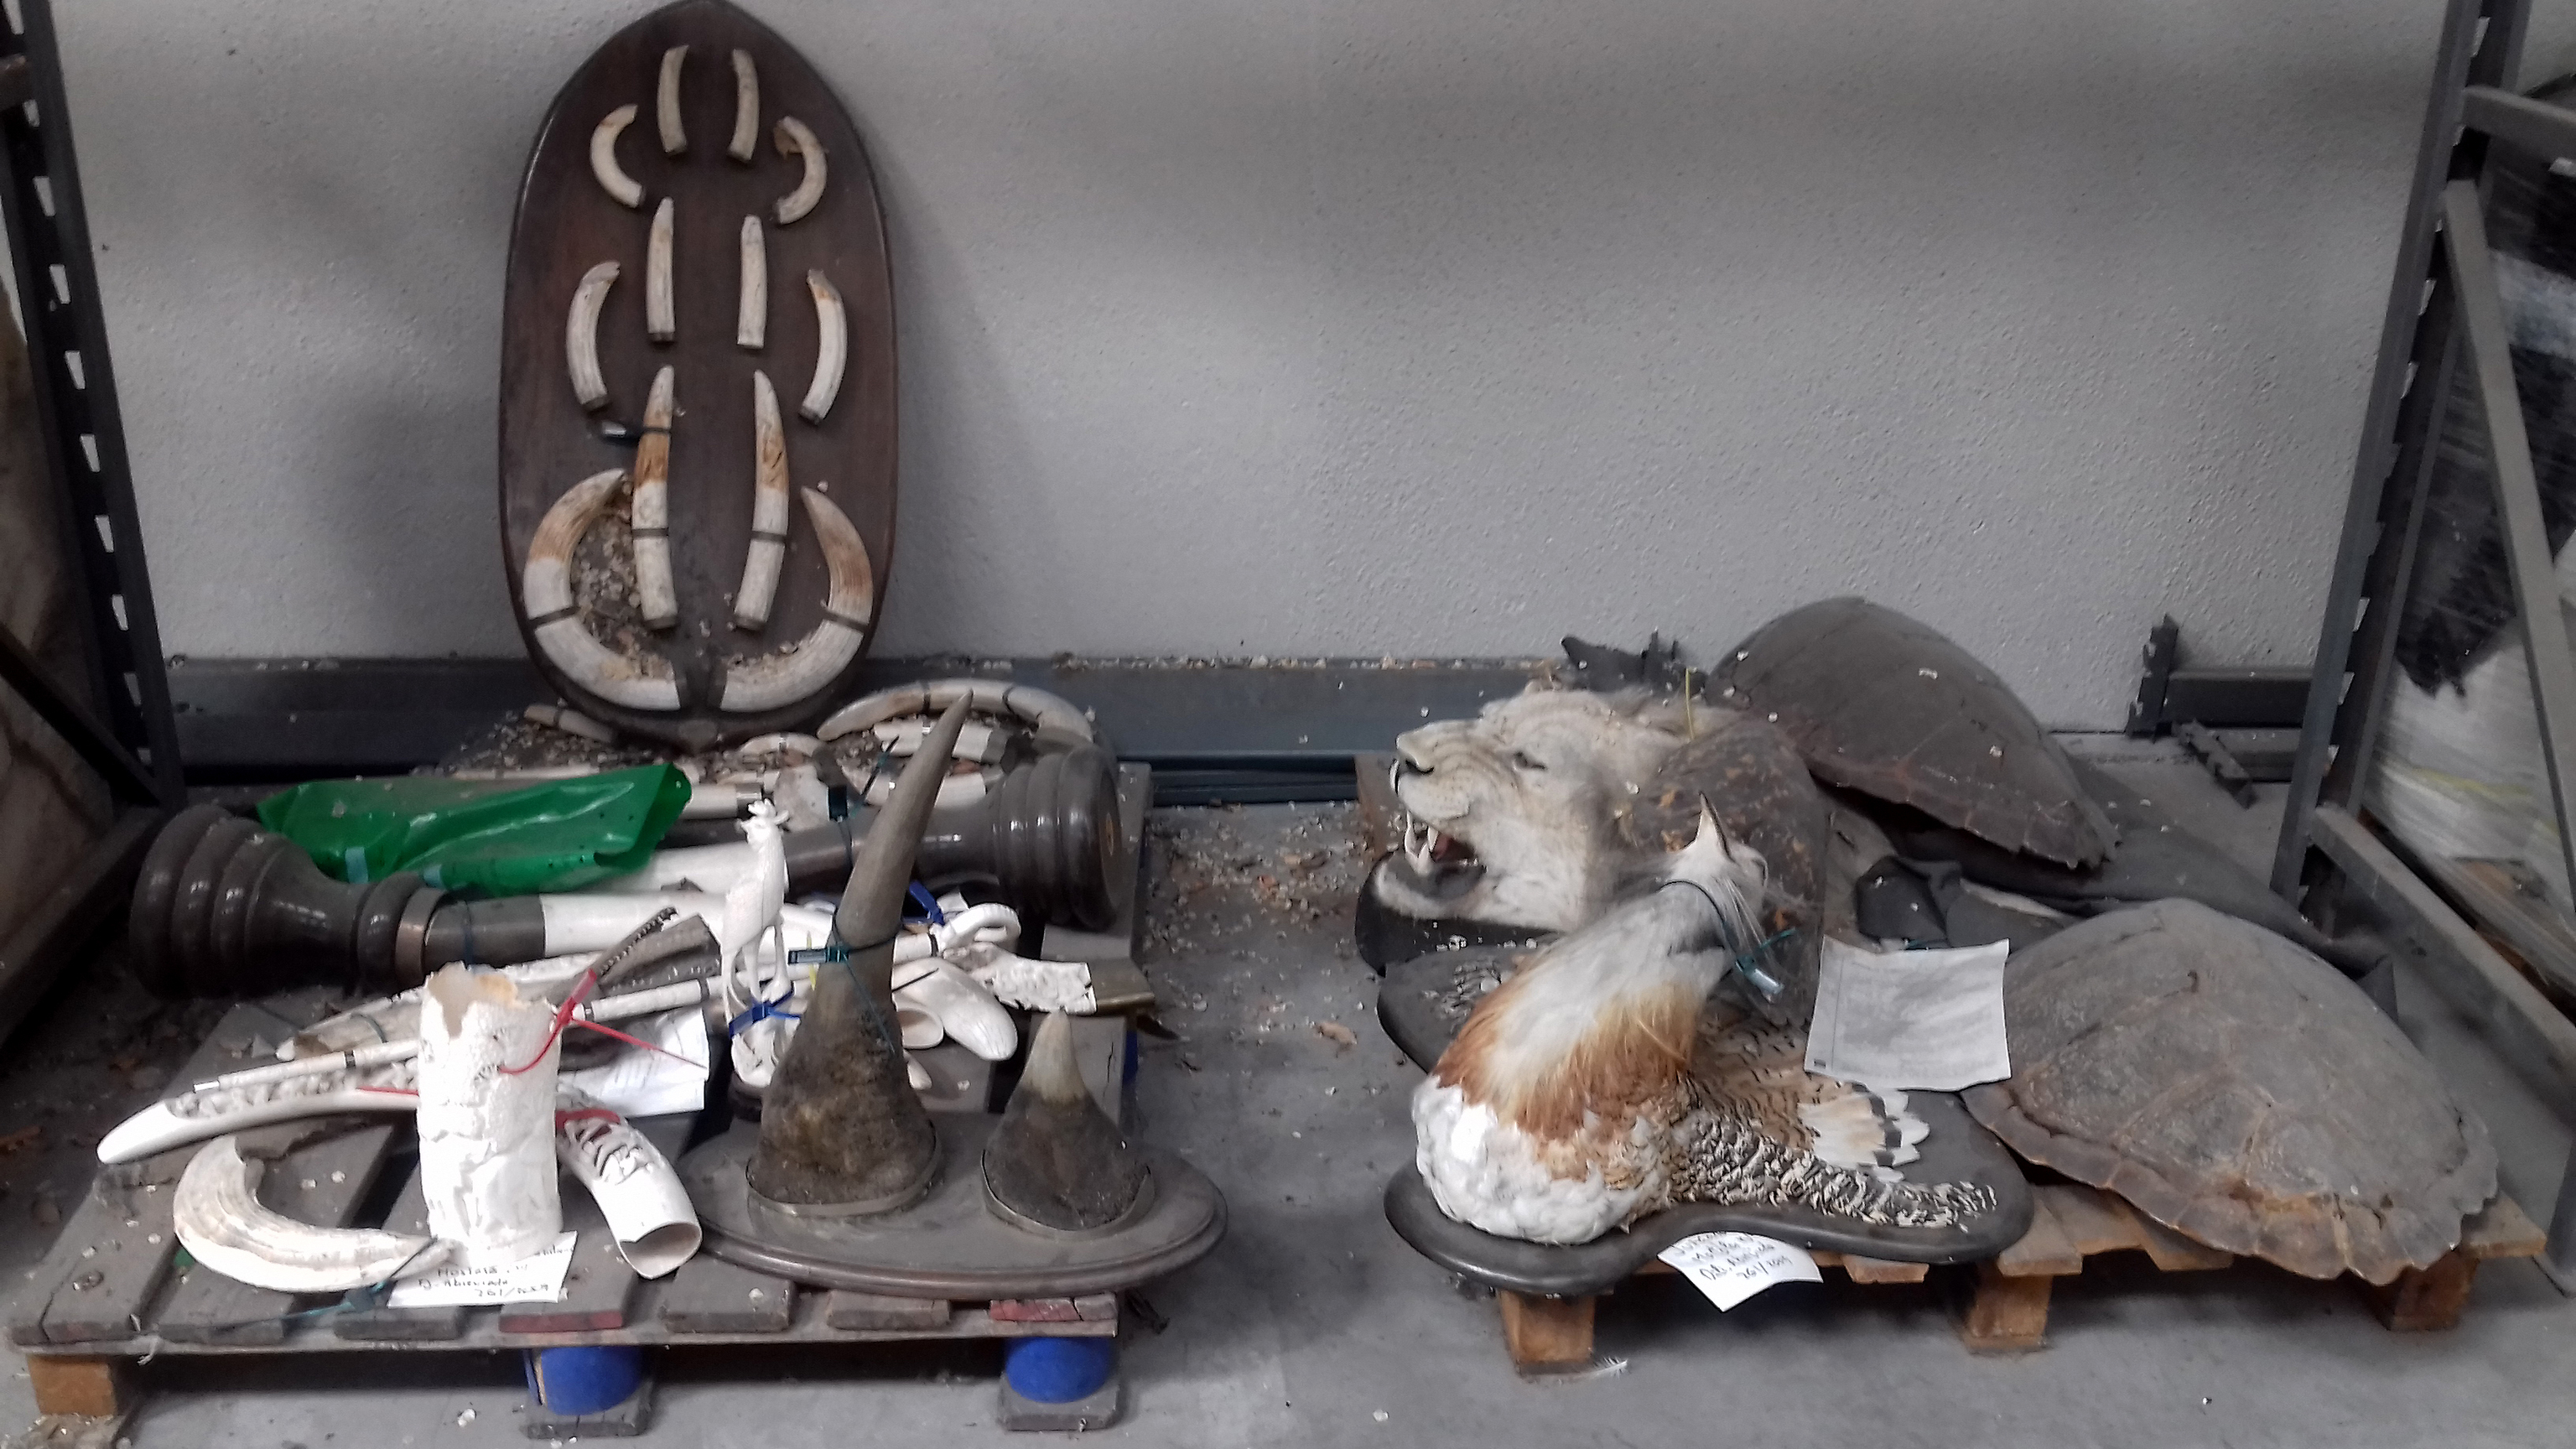 Pasos antes de llegar a sala CITES aparece un anticipo: partes de animales muertos.